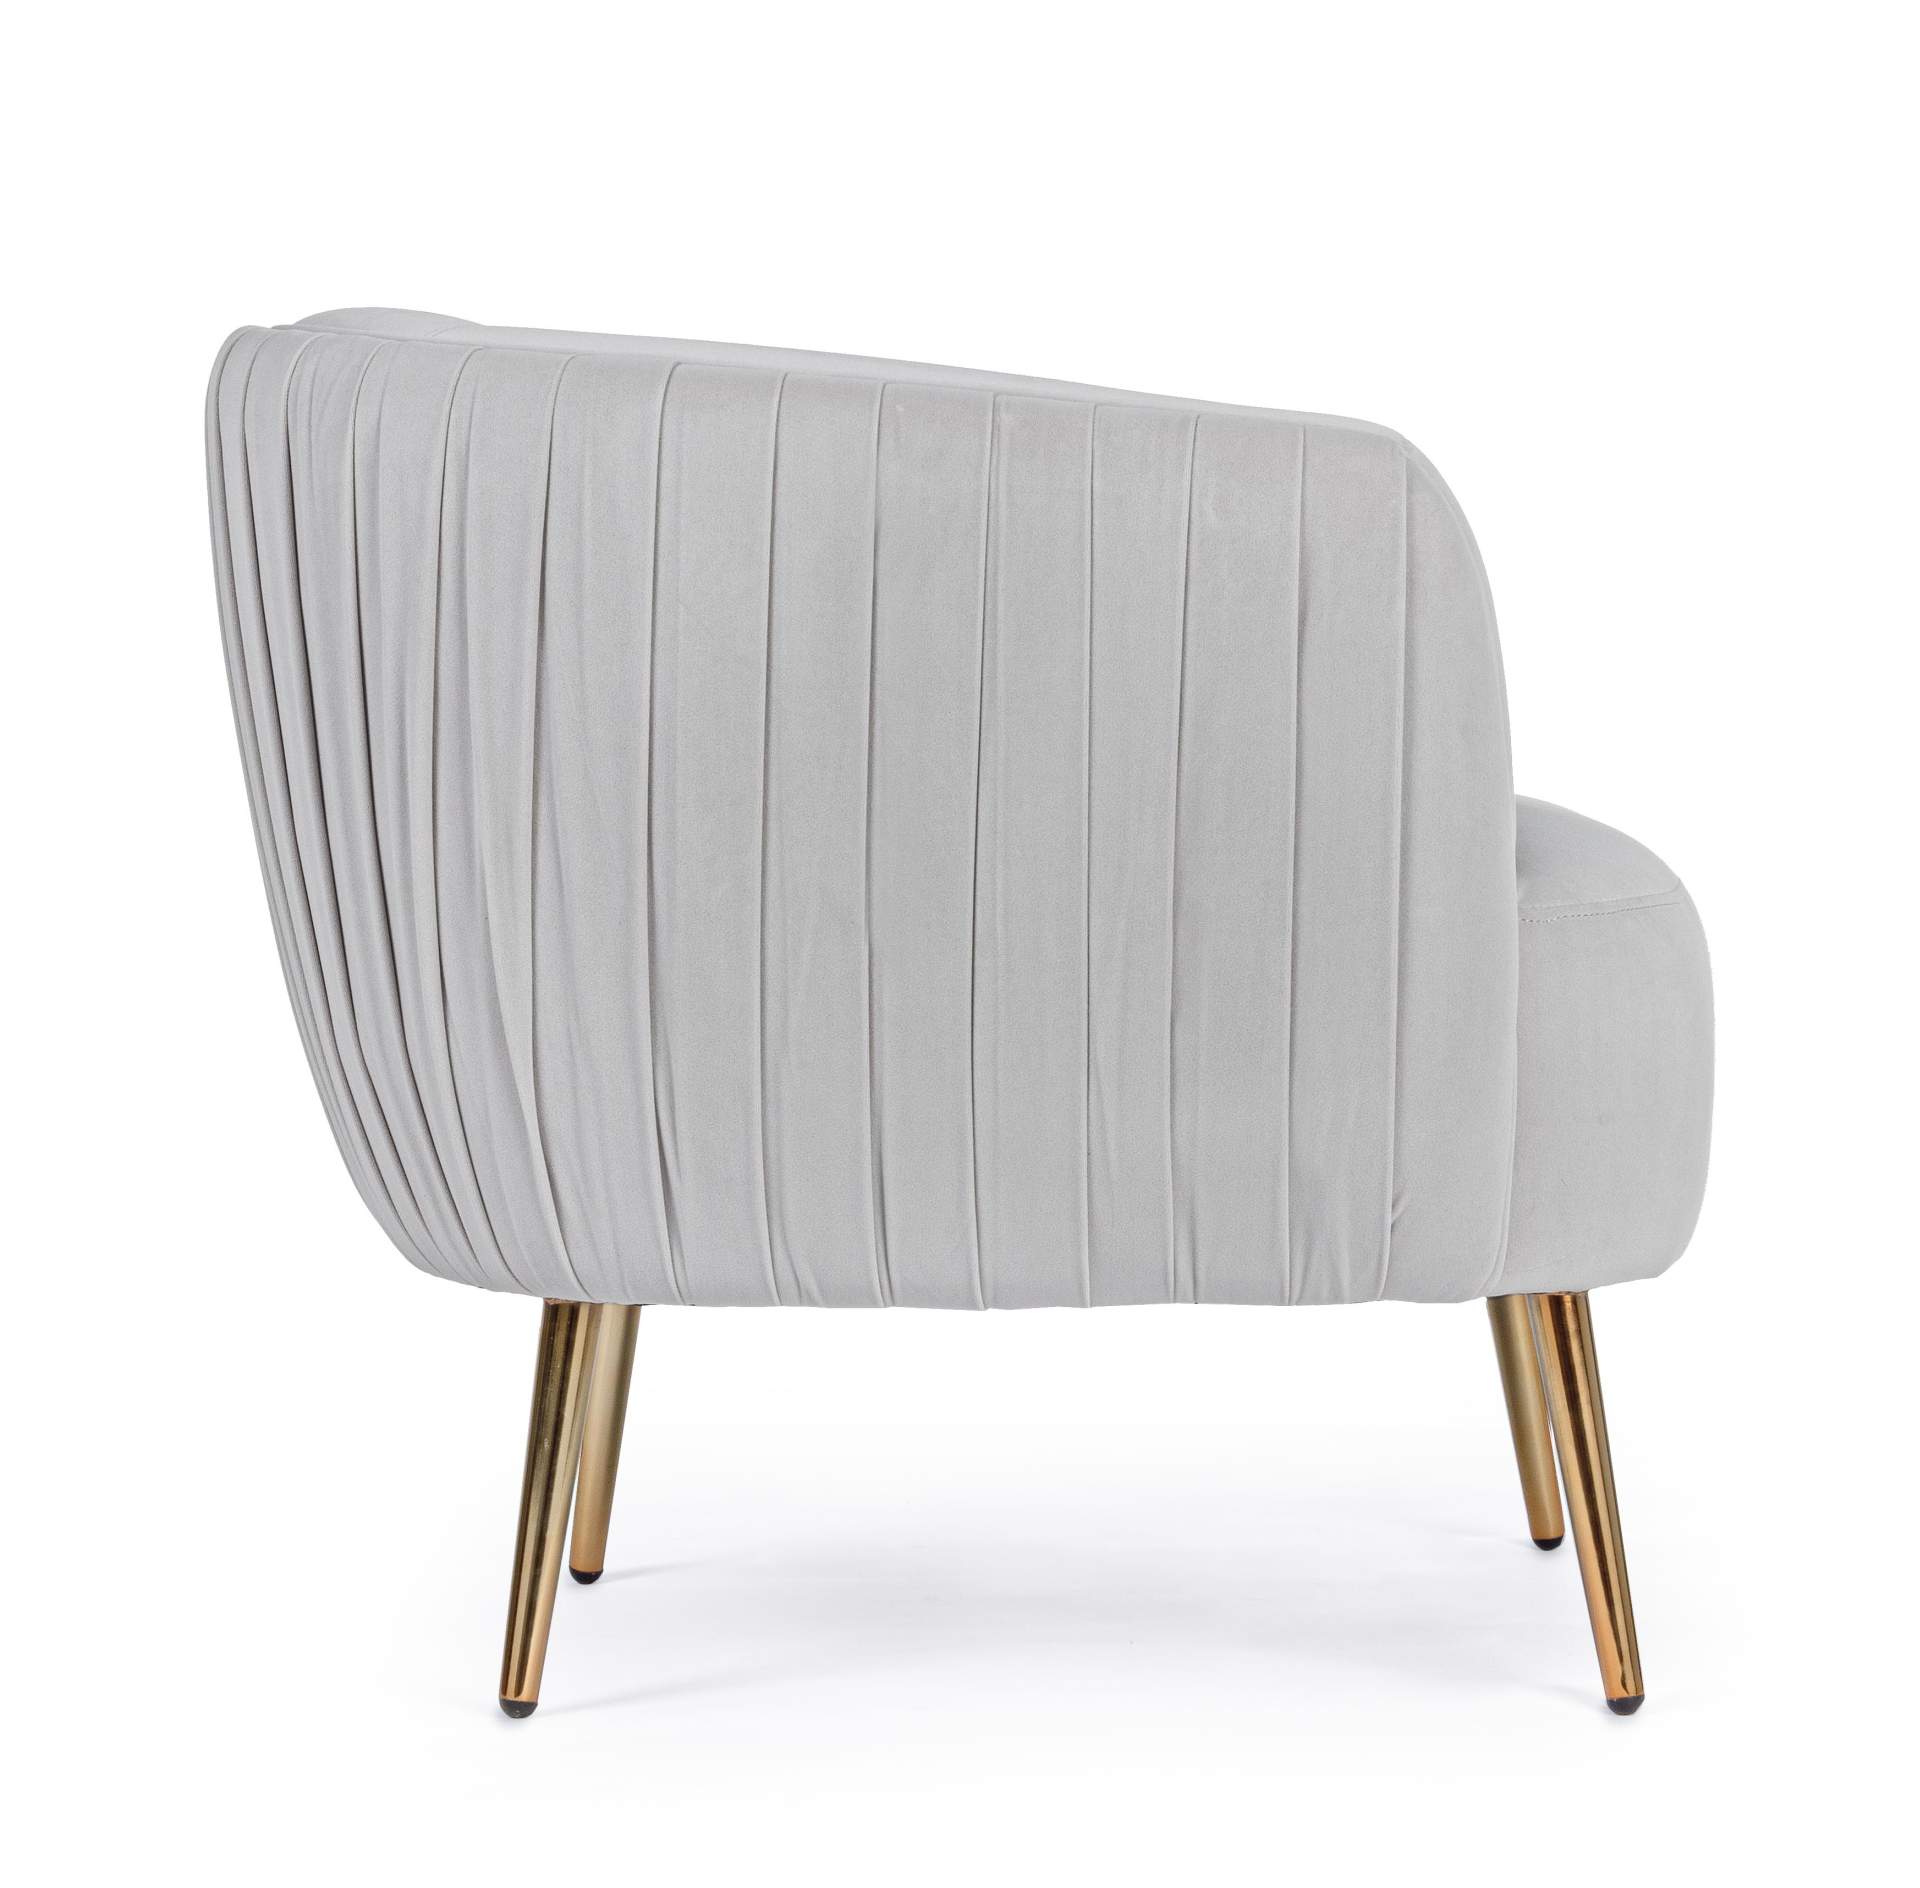 Der Sessel Linsey überzeugt mit seinem modernen Design. Gefertigt wurde er aus Stoff in Samt-Optik, welcher einen hellgrauen Farbton besitzt. Das Gestell ist aus Metall und hat eine goldene Farbe. Der Sessel besitzt eine Sitzhöhe von 45 cm. Die Breite bet